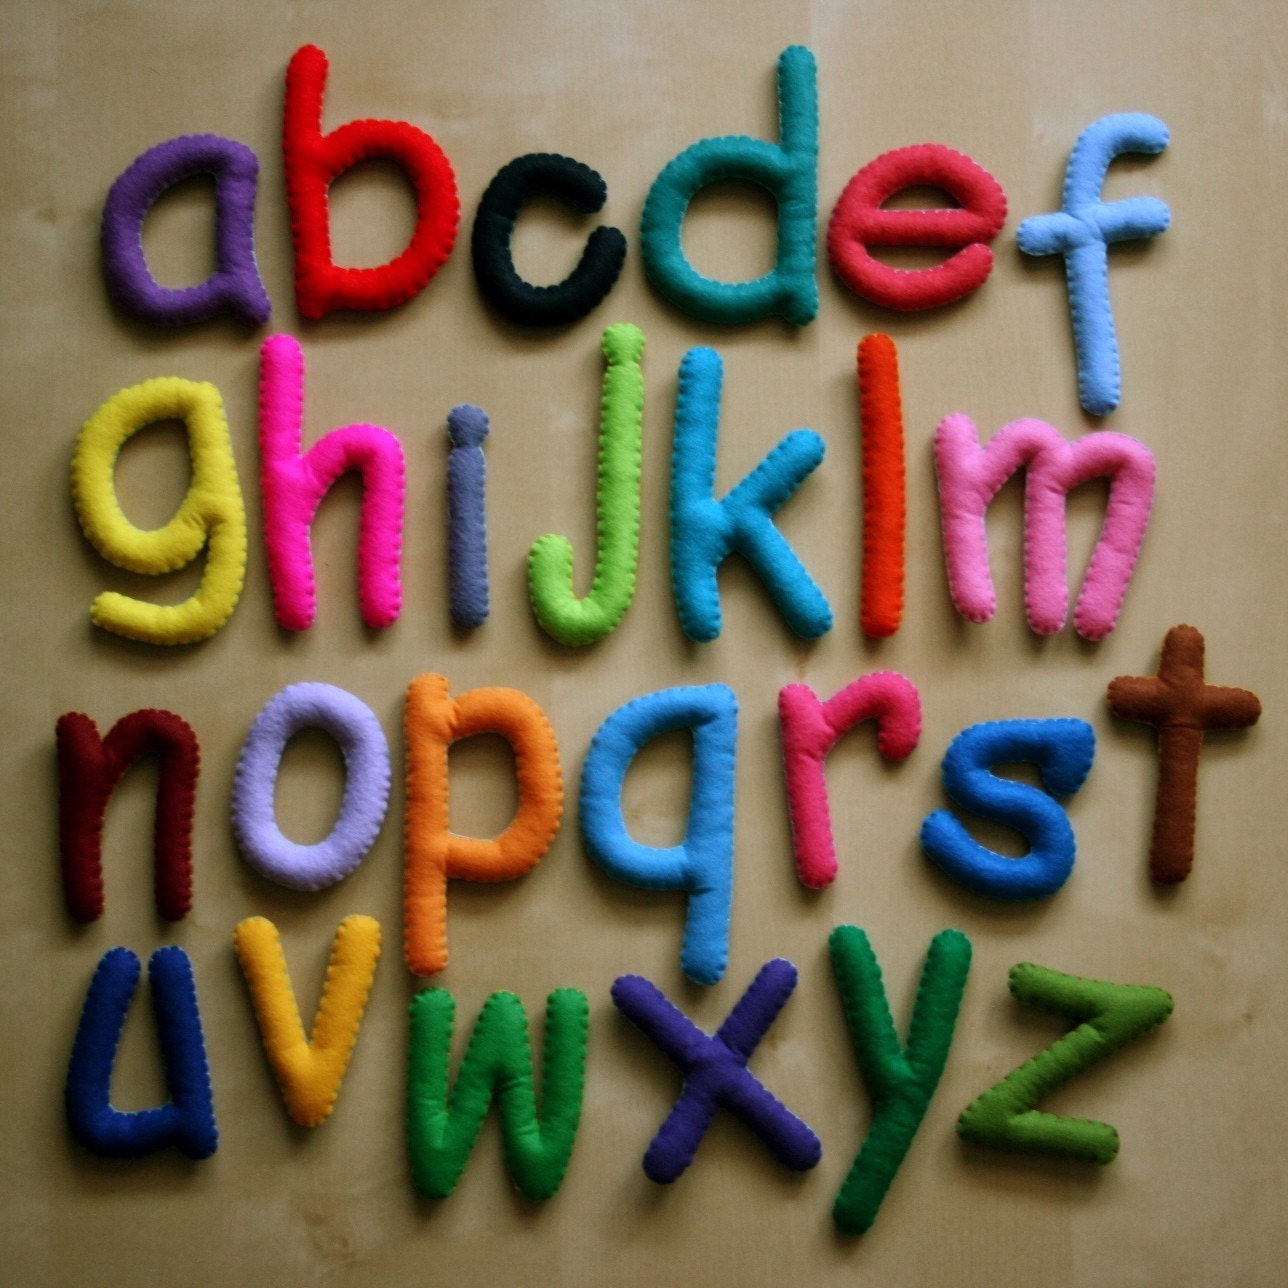 Large Multi Color Alphabet Set - 26 Stuffed Felt Letters - Lower Case